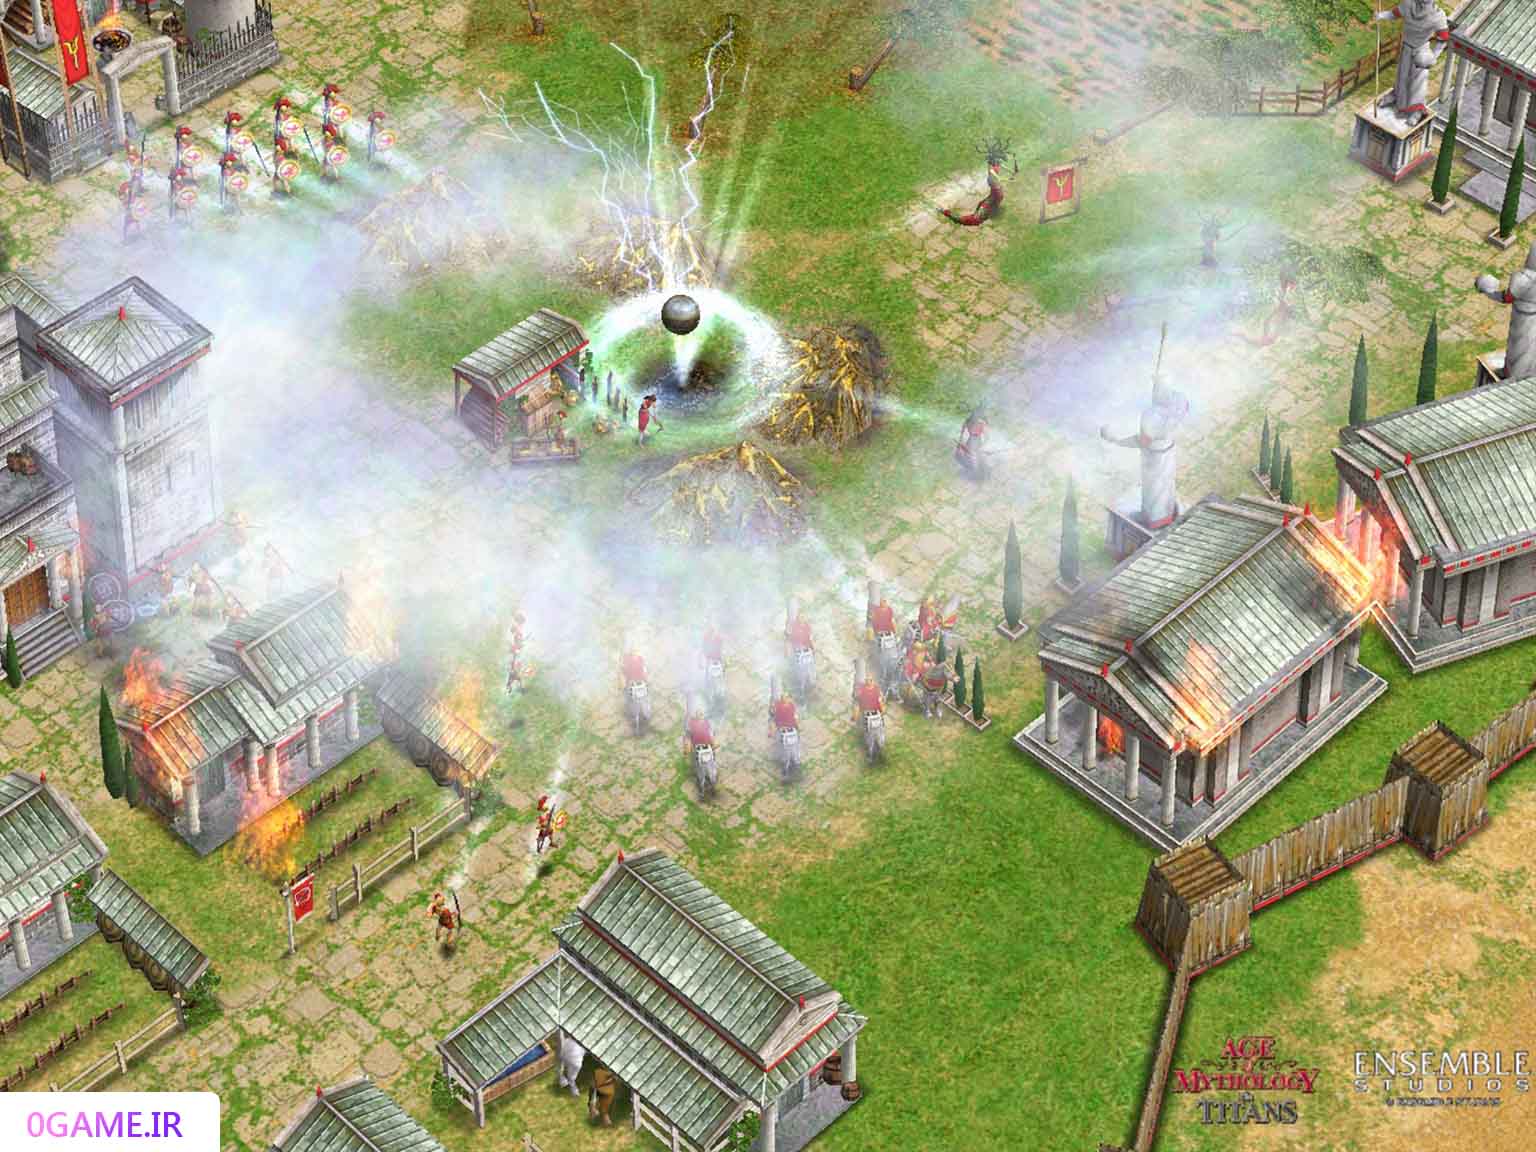 دانلود بازی (Age of Mythology) نسخه کامل برای کامپیوتر